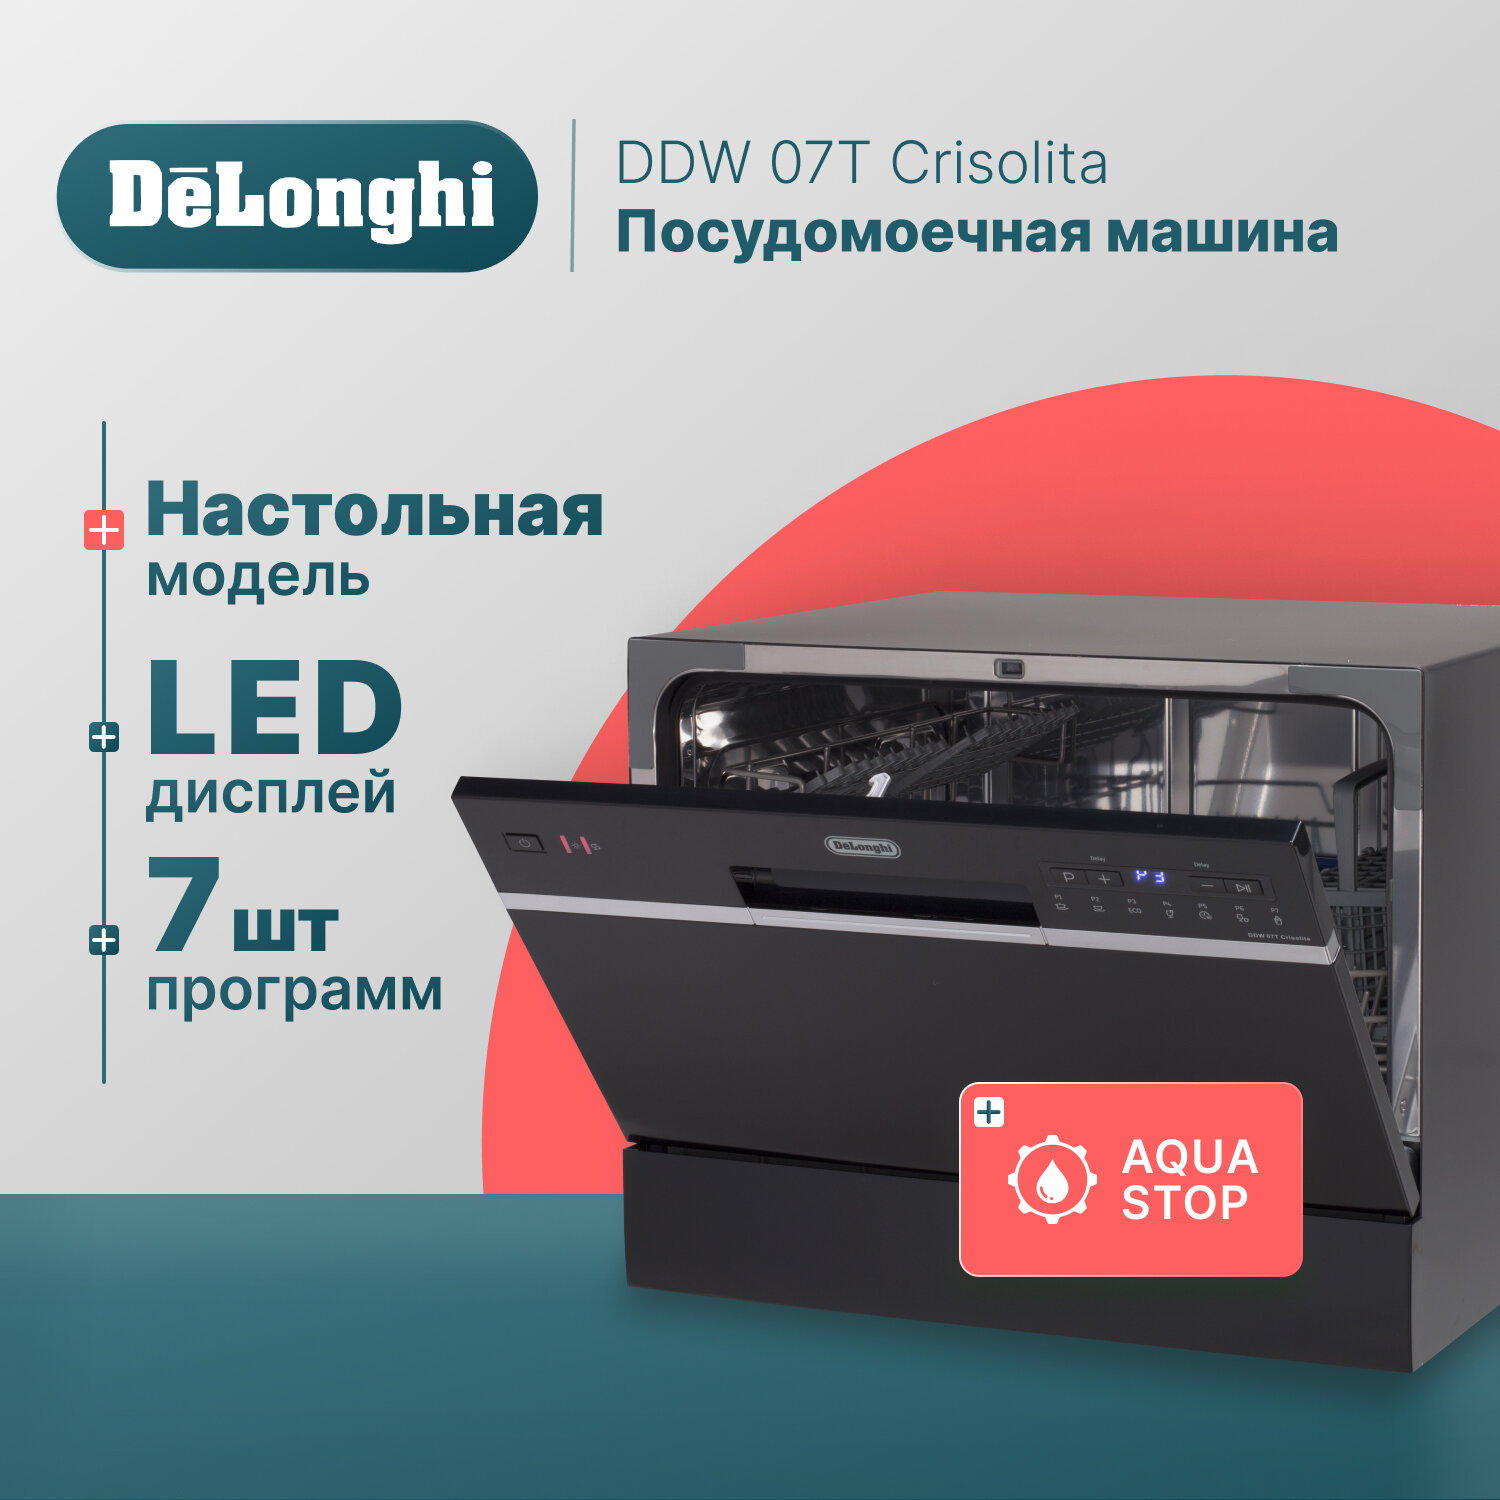 Компактная посудомоечная машина DeLonghi DDW 07T Crisolita, 6 комплектов, Aqua Stop, 7 программ